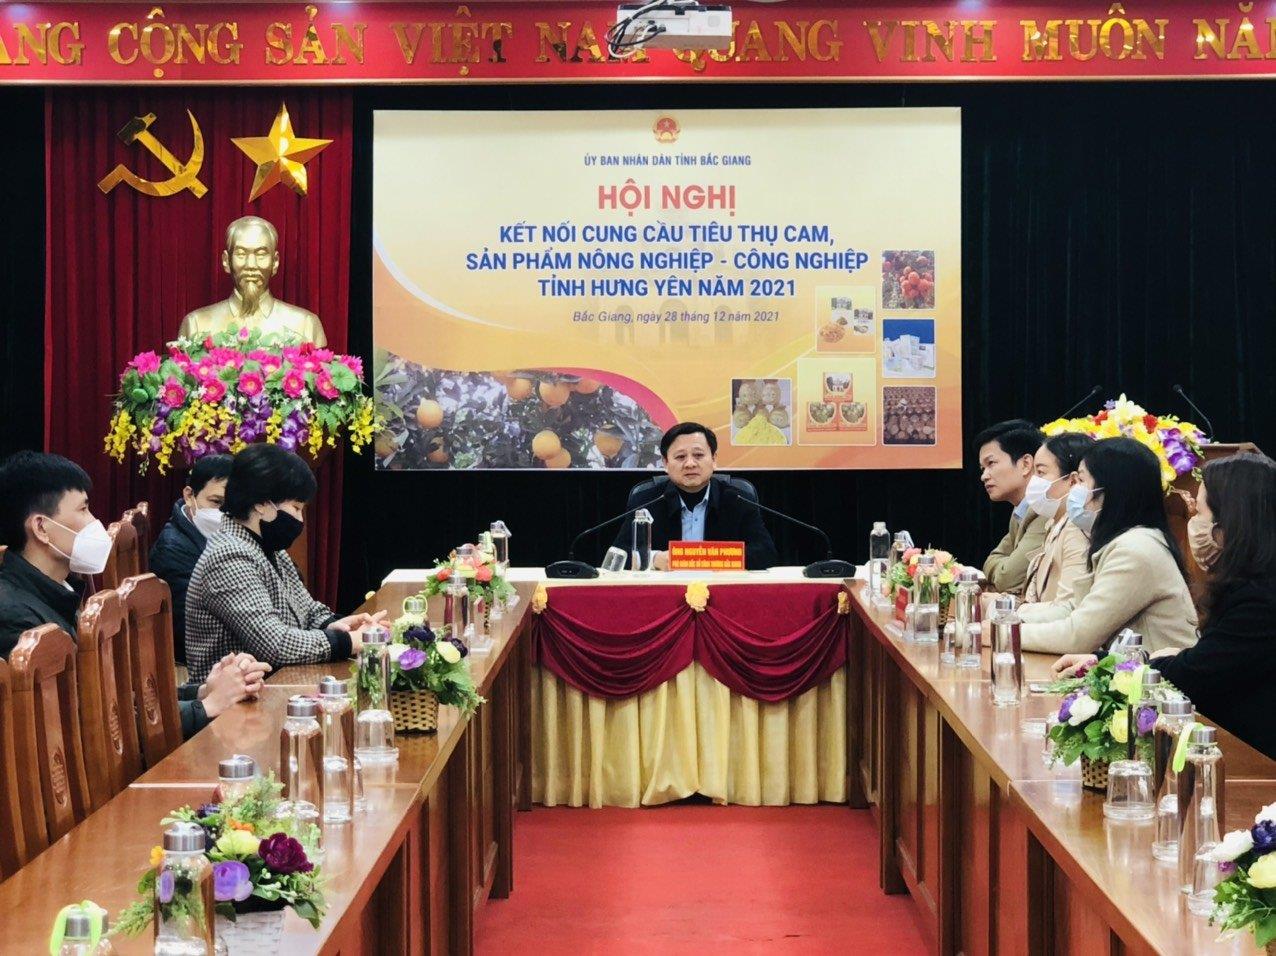 Bắc Giang tổ chức điểm cầu tham gia Hội nghị trực tuyến kết nối cung cầu tiêu thụ cam, sản phẩm nông nghiệp – công nghiệp tỉnh Hưng Yên năm 2021